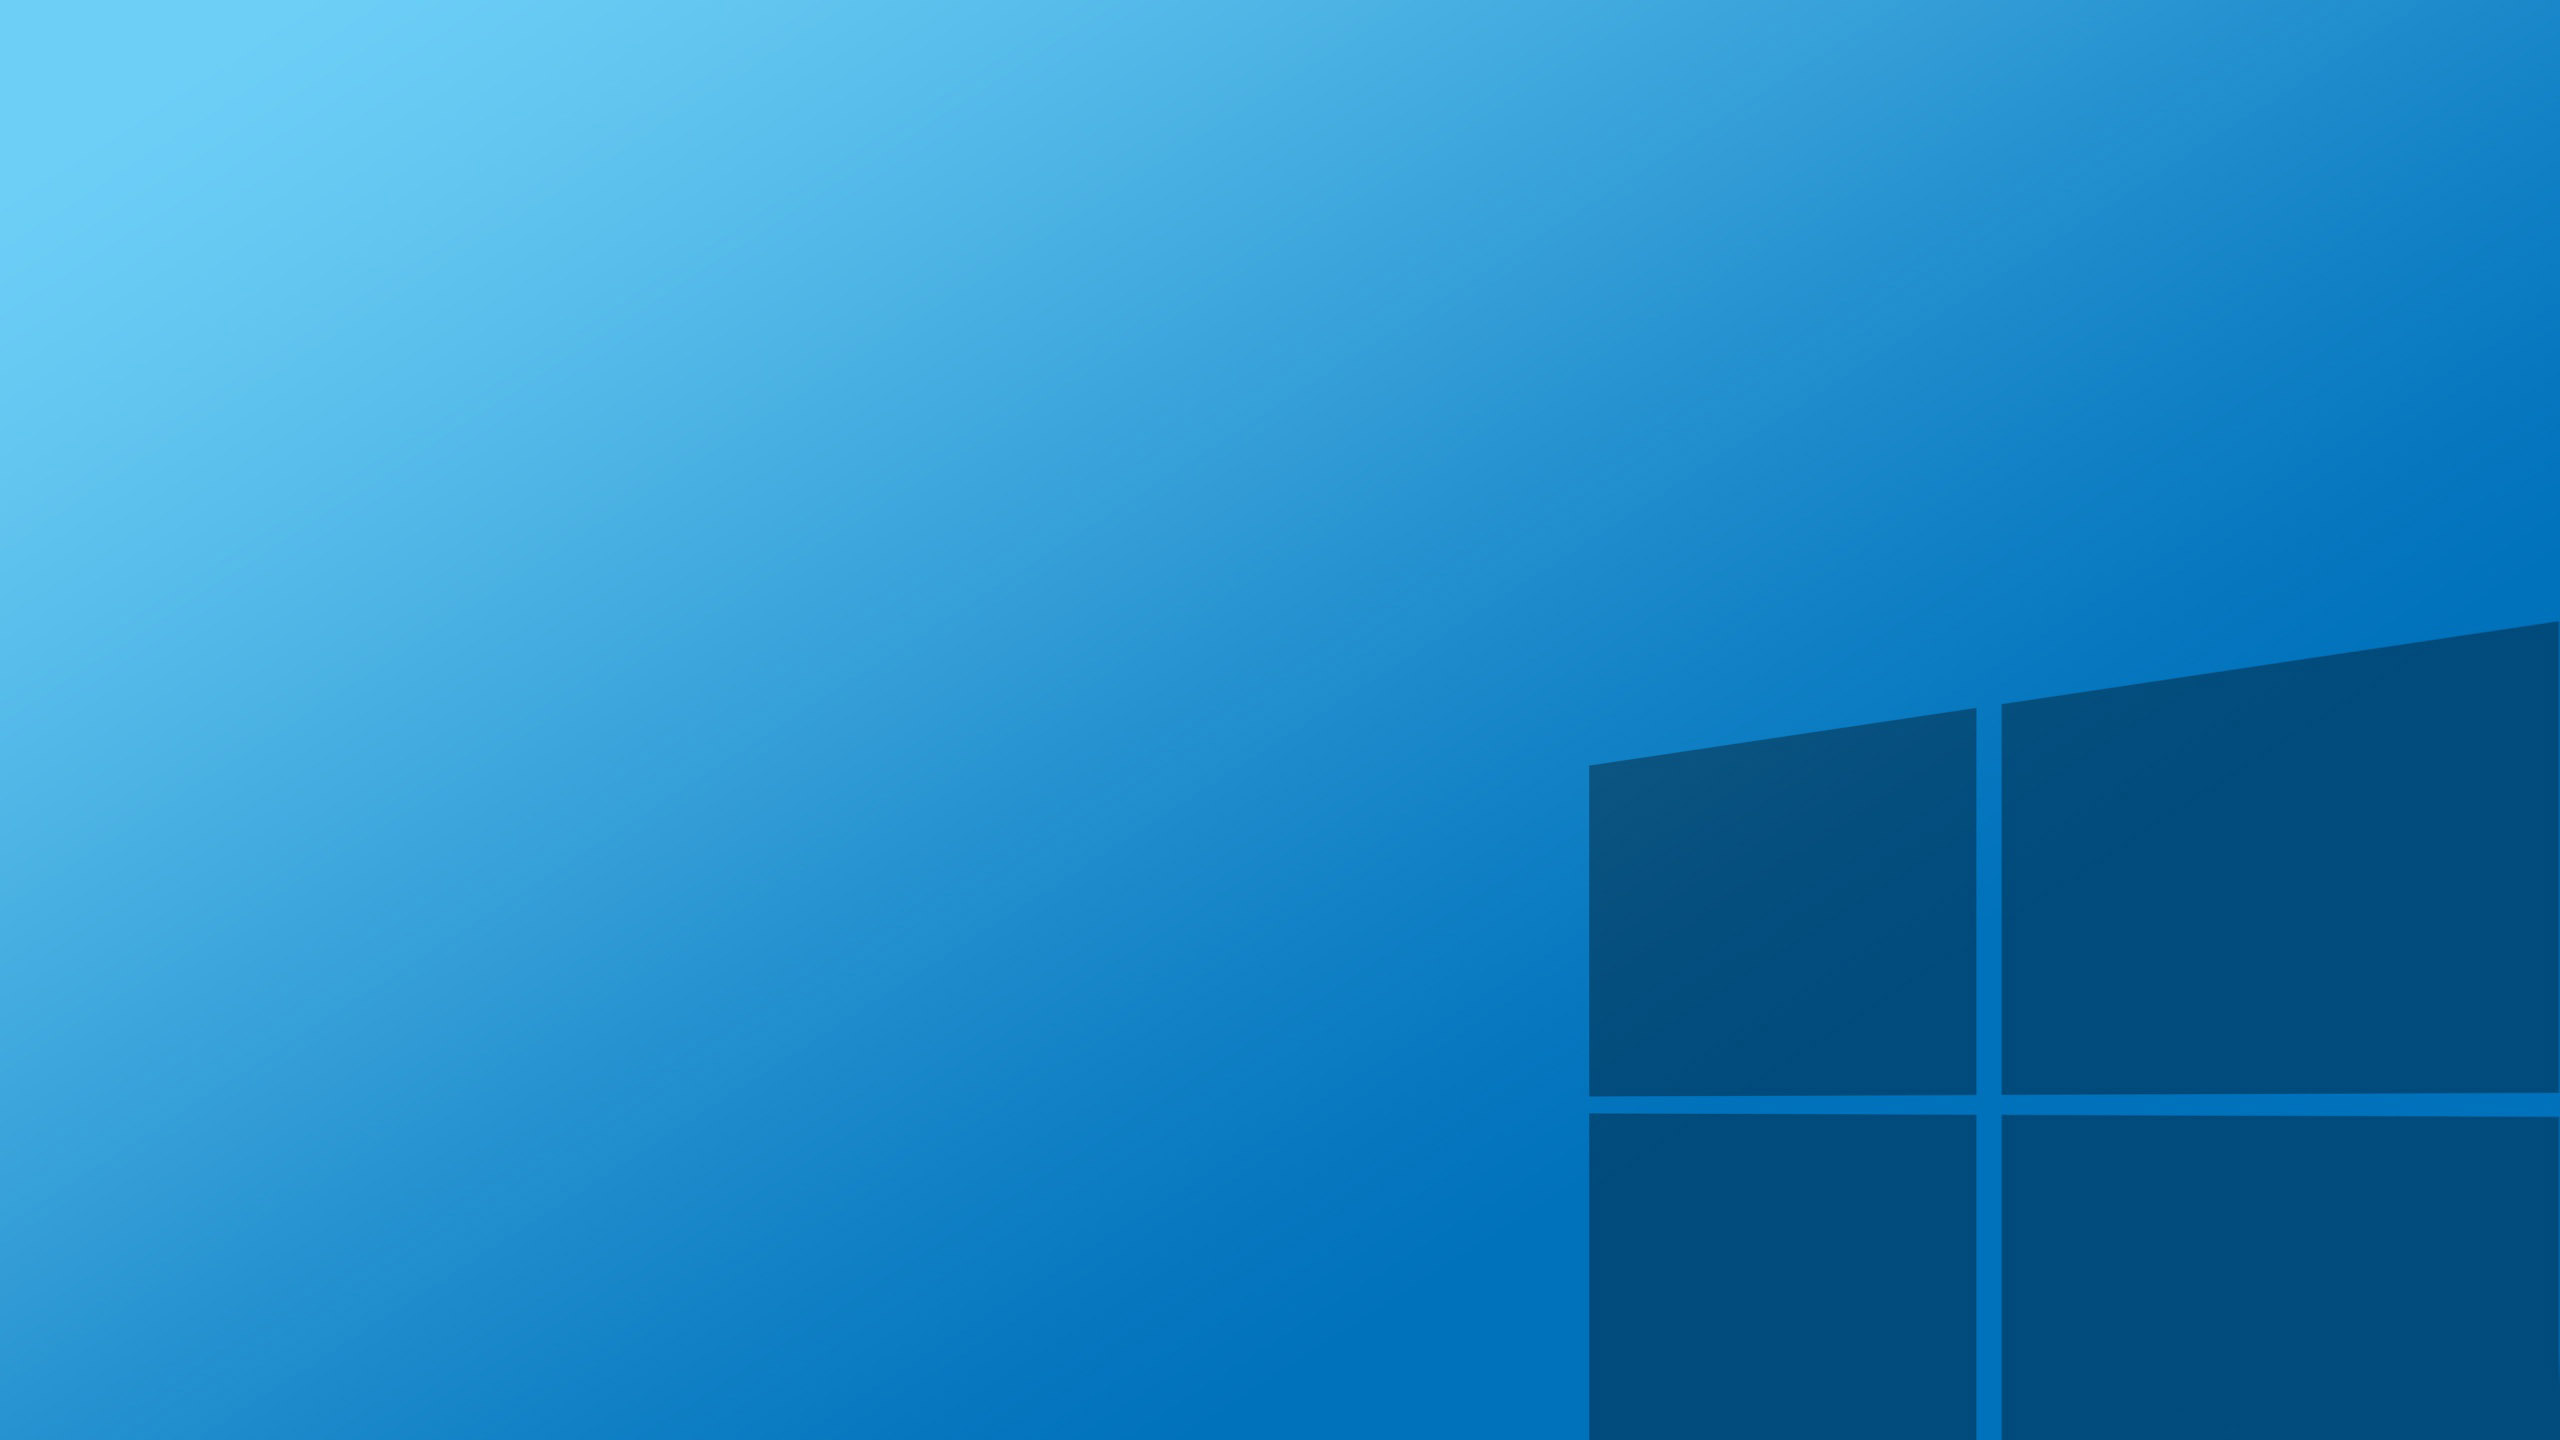 Không thể thiếu Windows 10 trên các thiết bị điện tử của bạn. Chúng tôi cung cấp trang chủ Microsoft Home trực tiếp để bạn có thể tải nhanh và chính xác nhất phiên bản Windows 10 mà mình yêu thích. Hãy đến với chúng tôi để sở hữu ngay phần mềm tuyệt vời này!